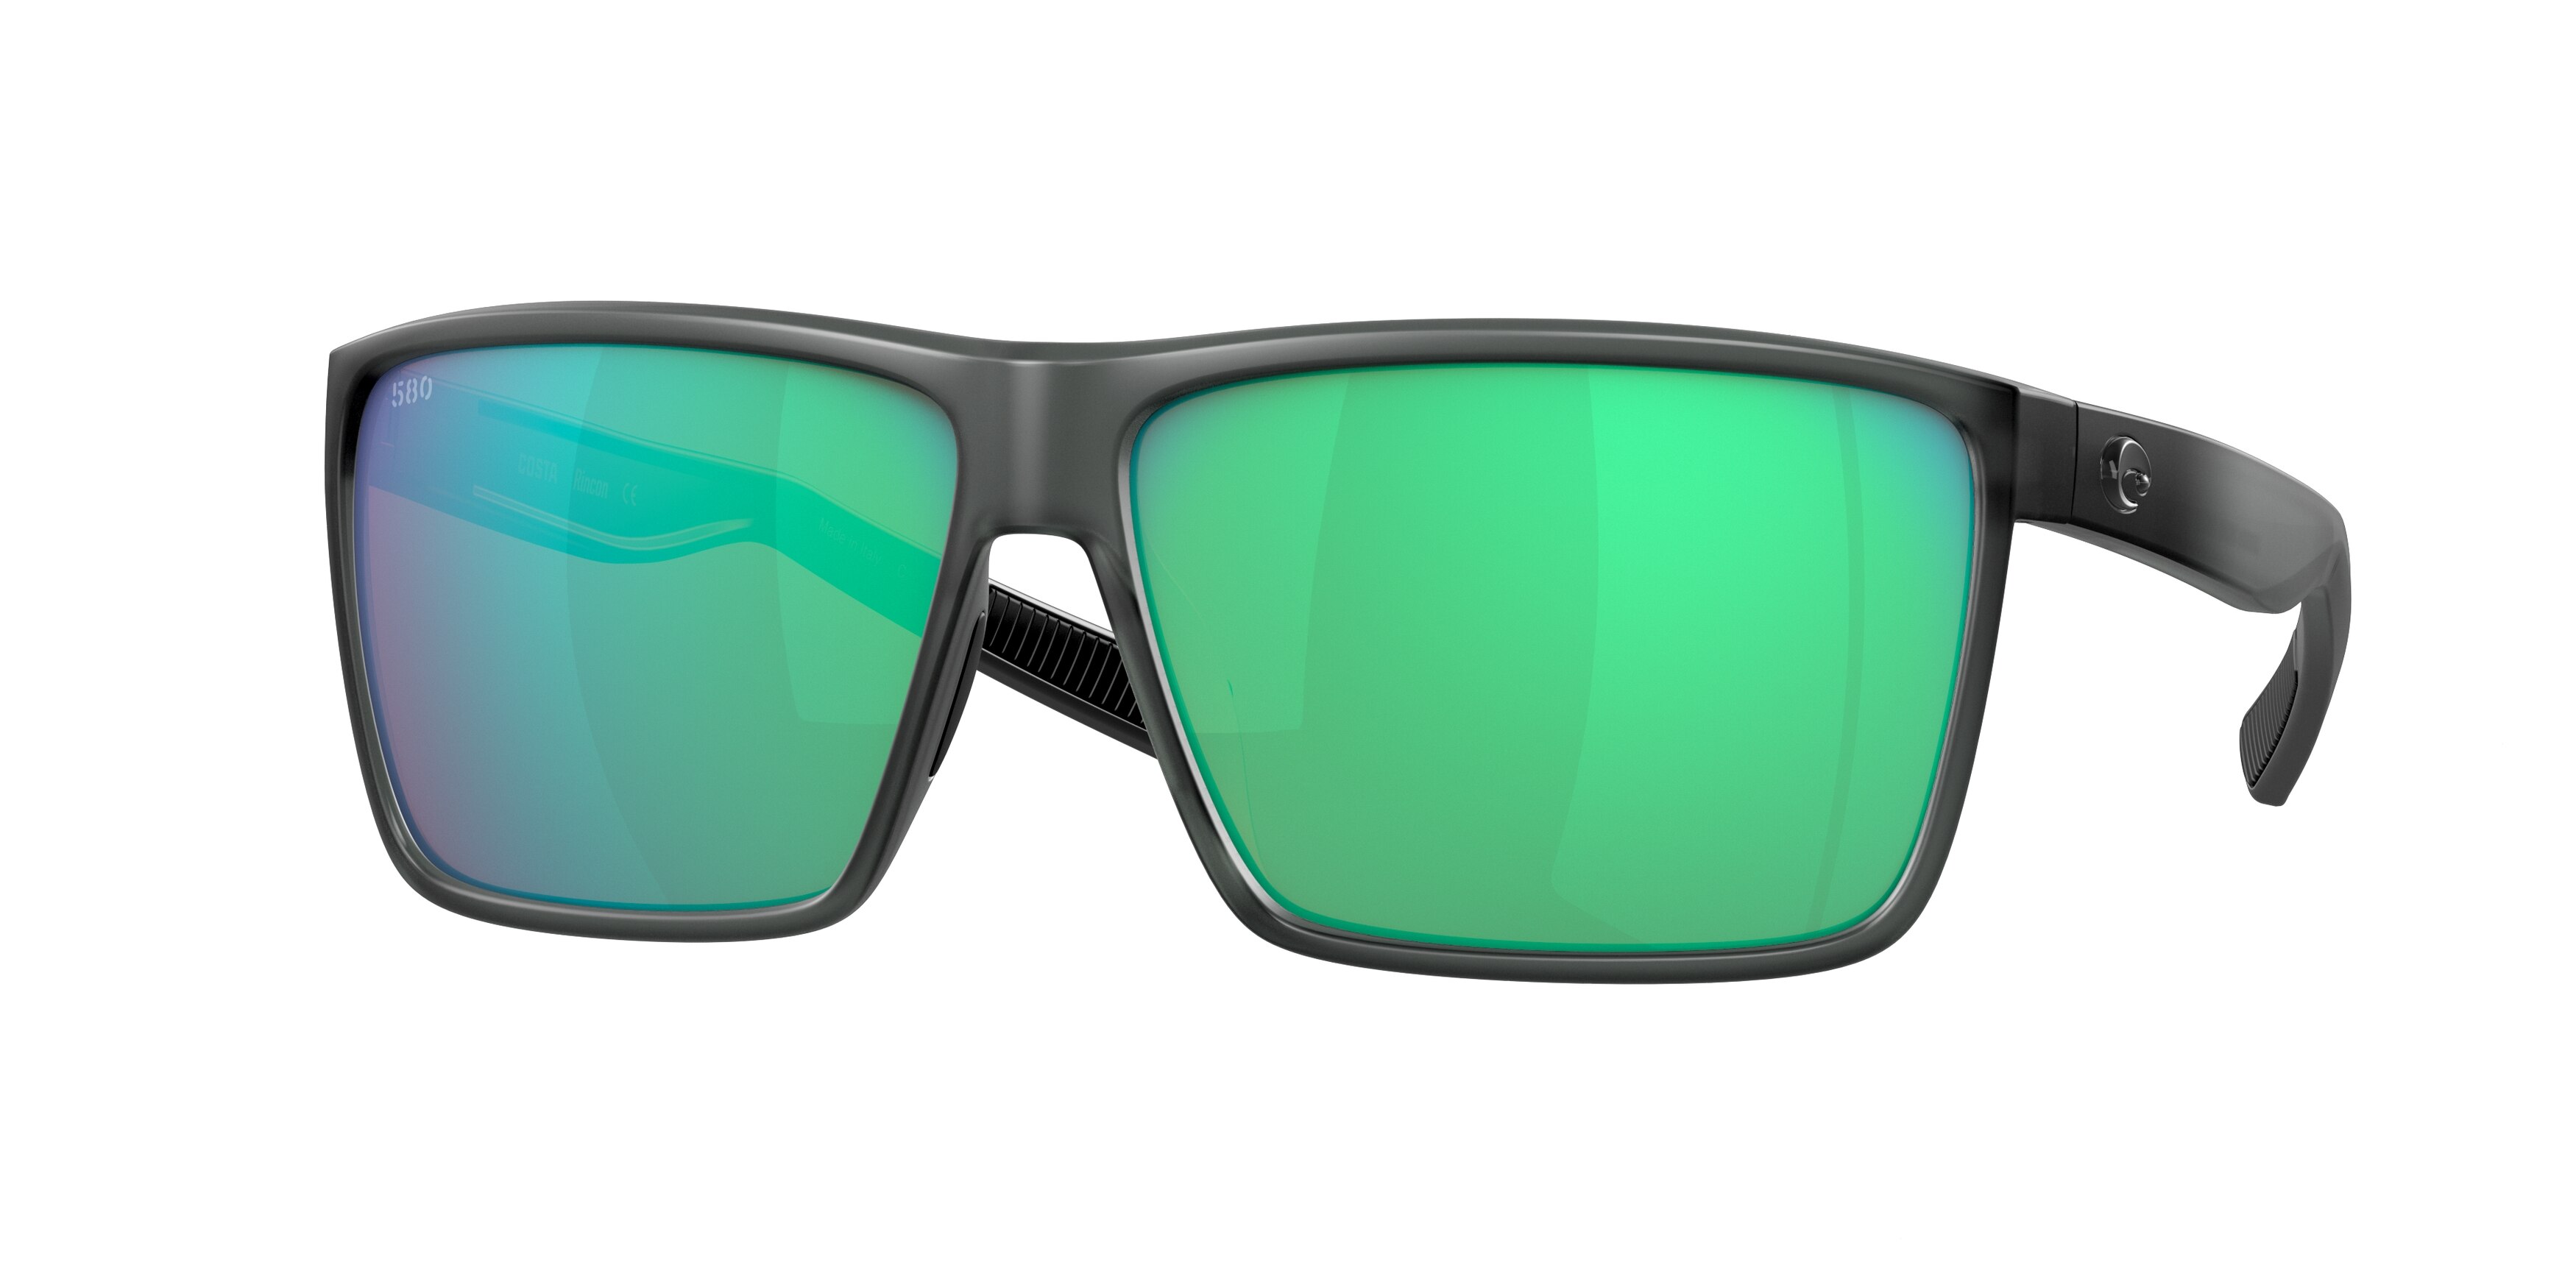 Sunglasses for Men - Men Sunglasses - Specsforvets